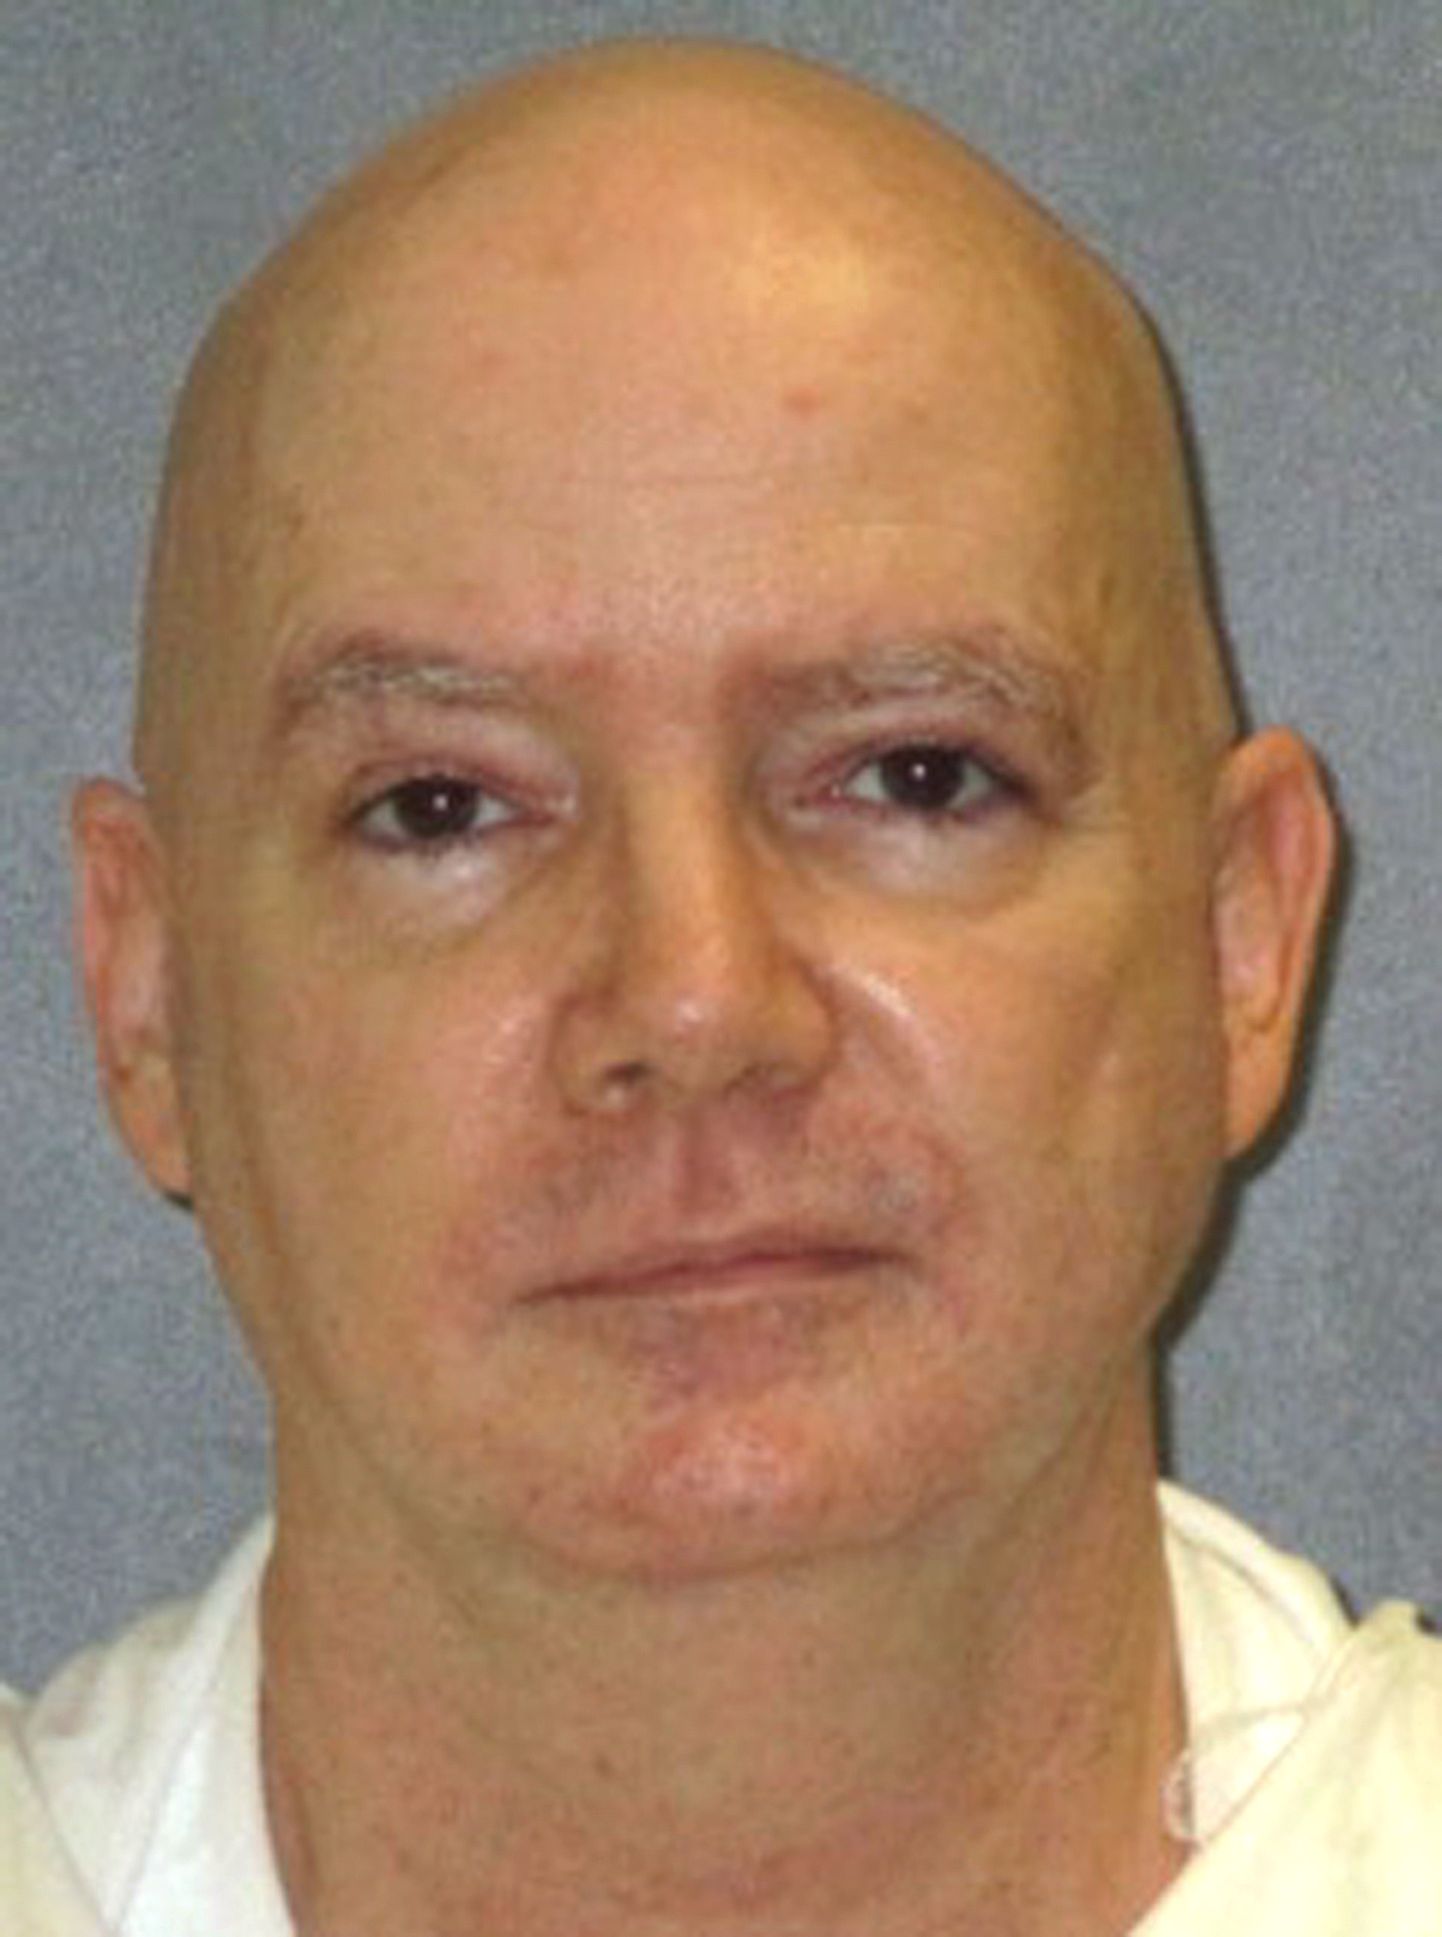 Sarimõrvar Anthony Shore saab esimeseks 2018. aastal USAs hukatud inimeseks.